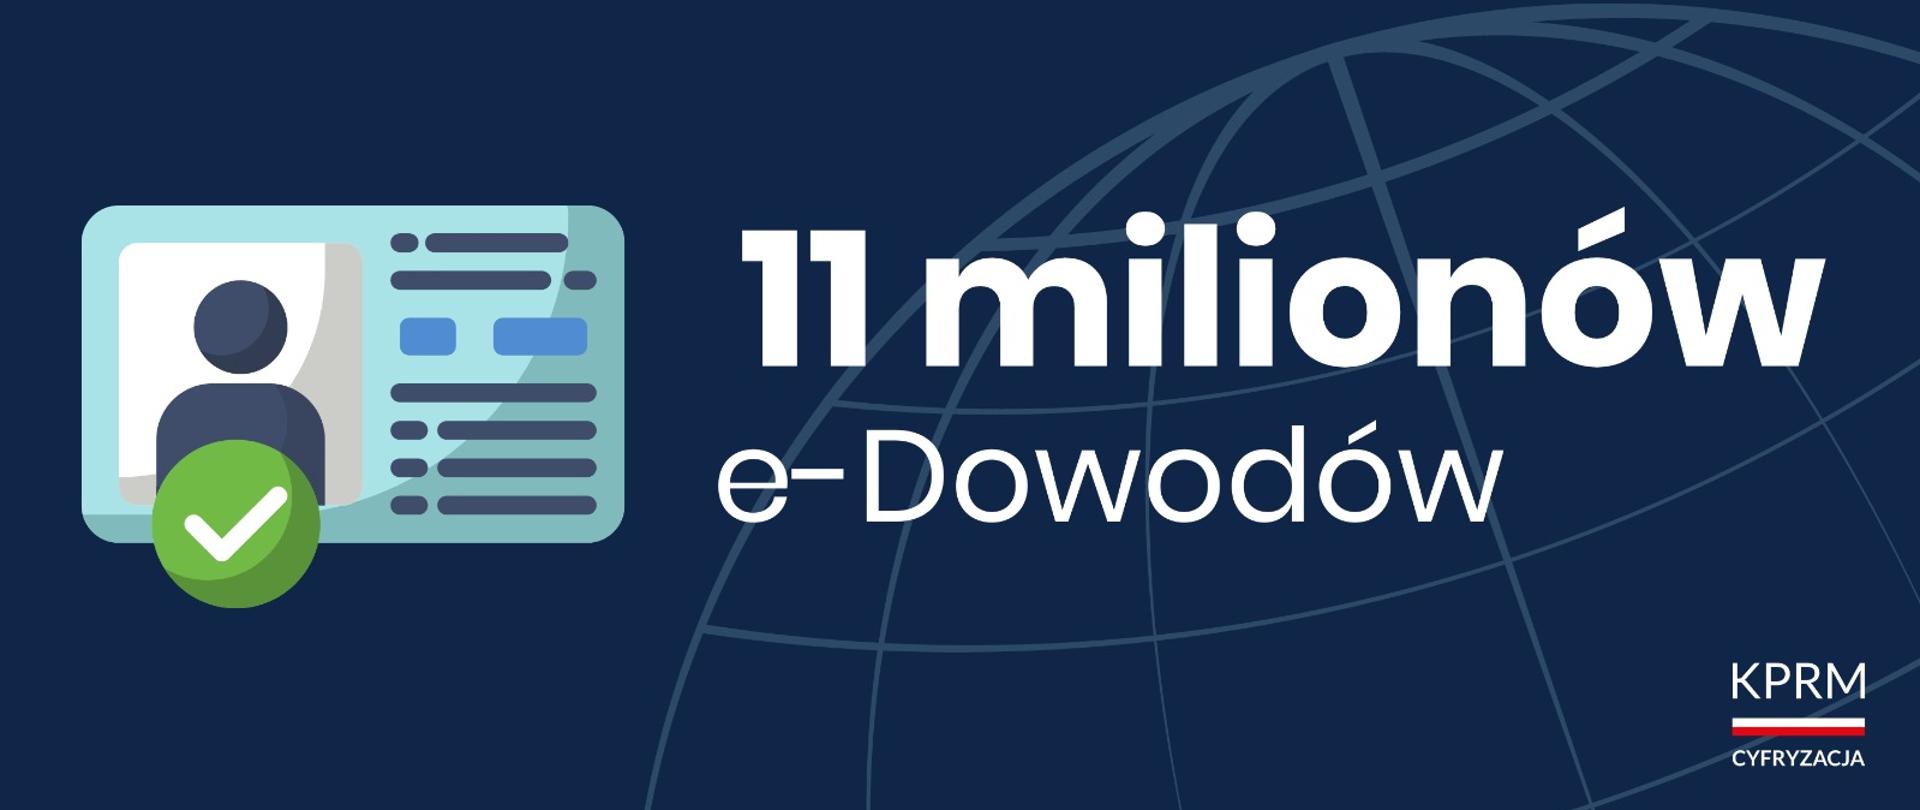 Ponad 11 milionów Polaków z e-dowodem 